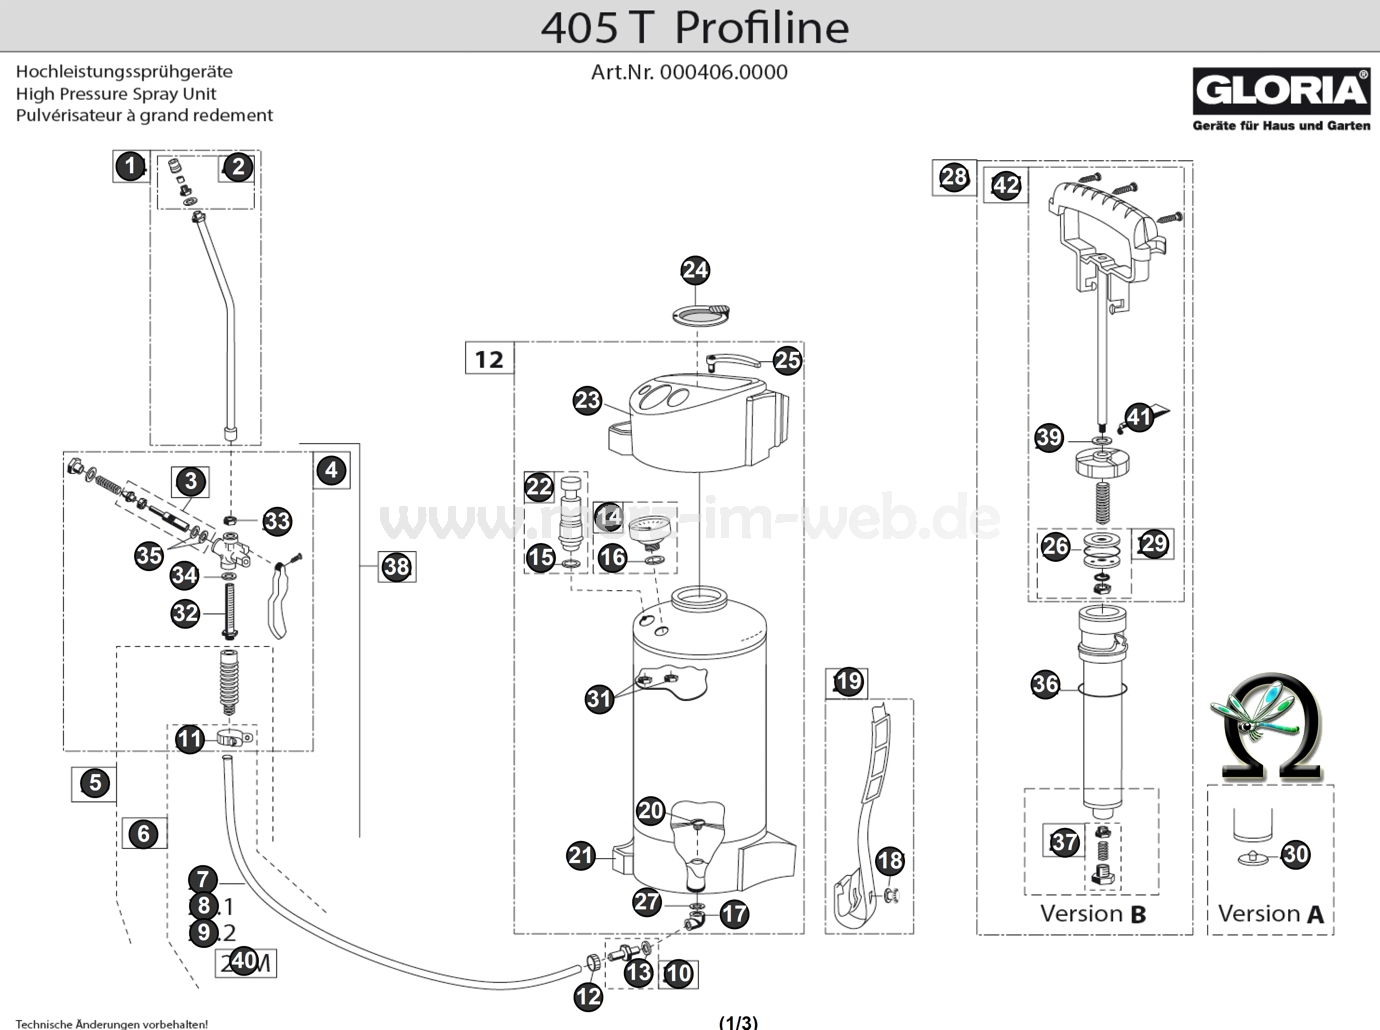 Hochleistungssprühgerät Gloria 405 T Profiline Zeichnung der Einzelteile